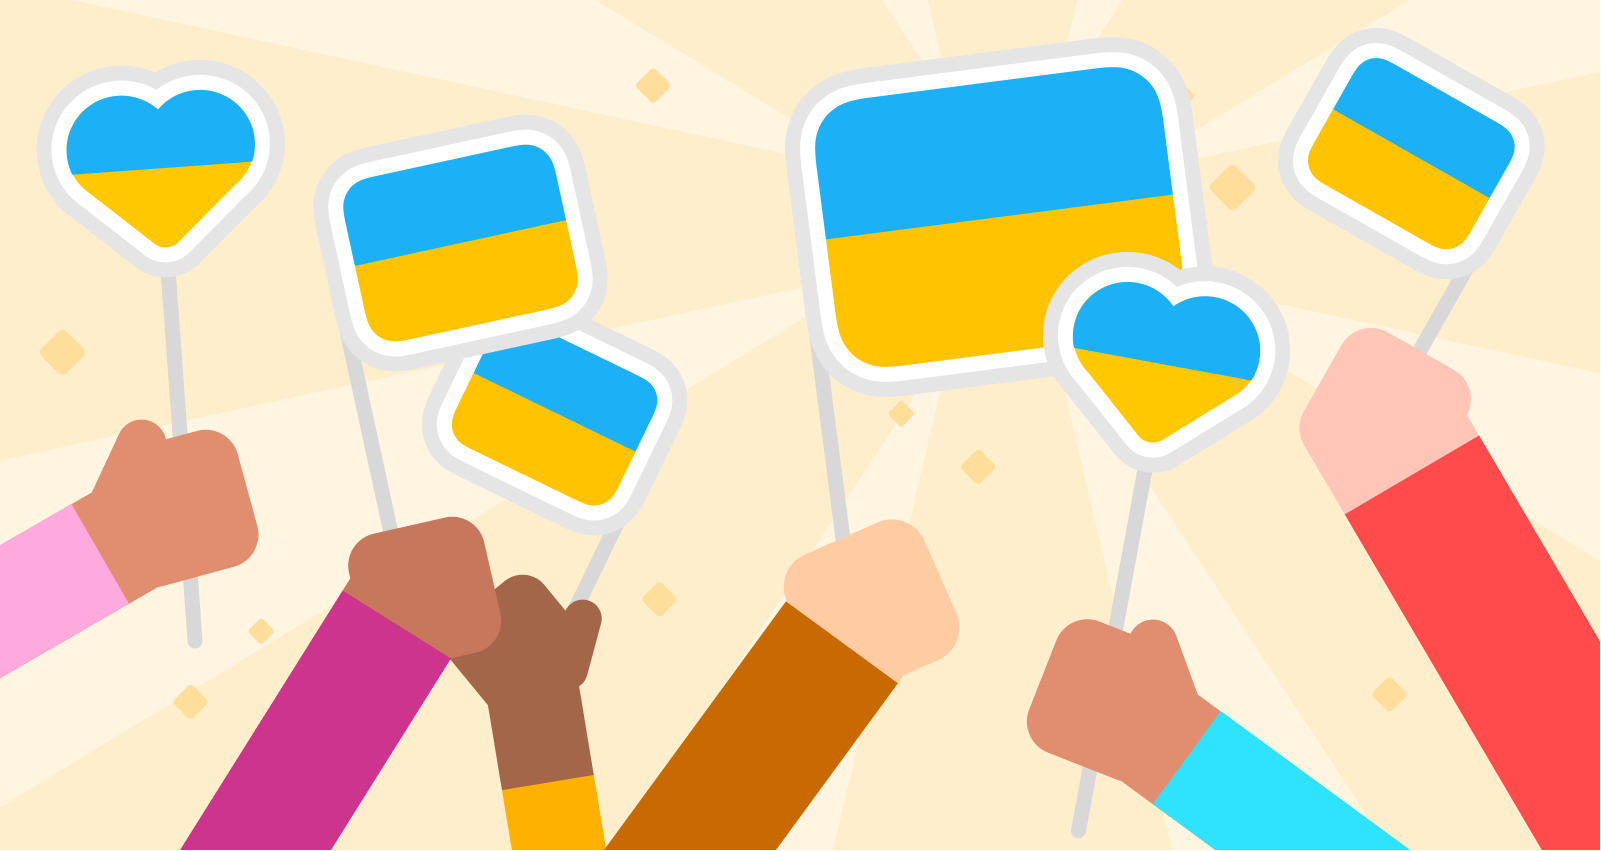 Imagen de siete manos sosteniendo siete banderas de Ucrania. Algunas de las banderas son rectangulares y otras tienen forma de corazón. Las manos tienen una variedad de tonos de piel y visten remeras de diferentes colores. Detrás de las banderas puede verse un ligero brillo y resplandor.